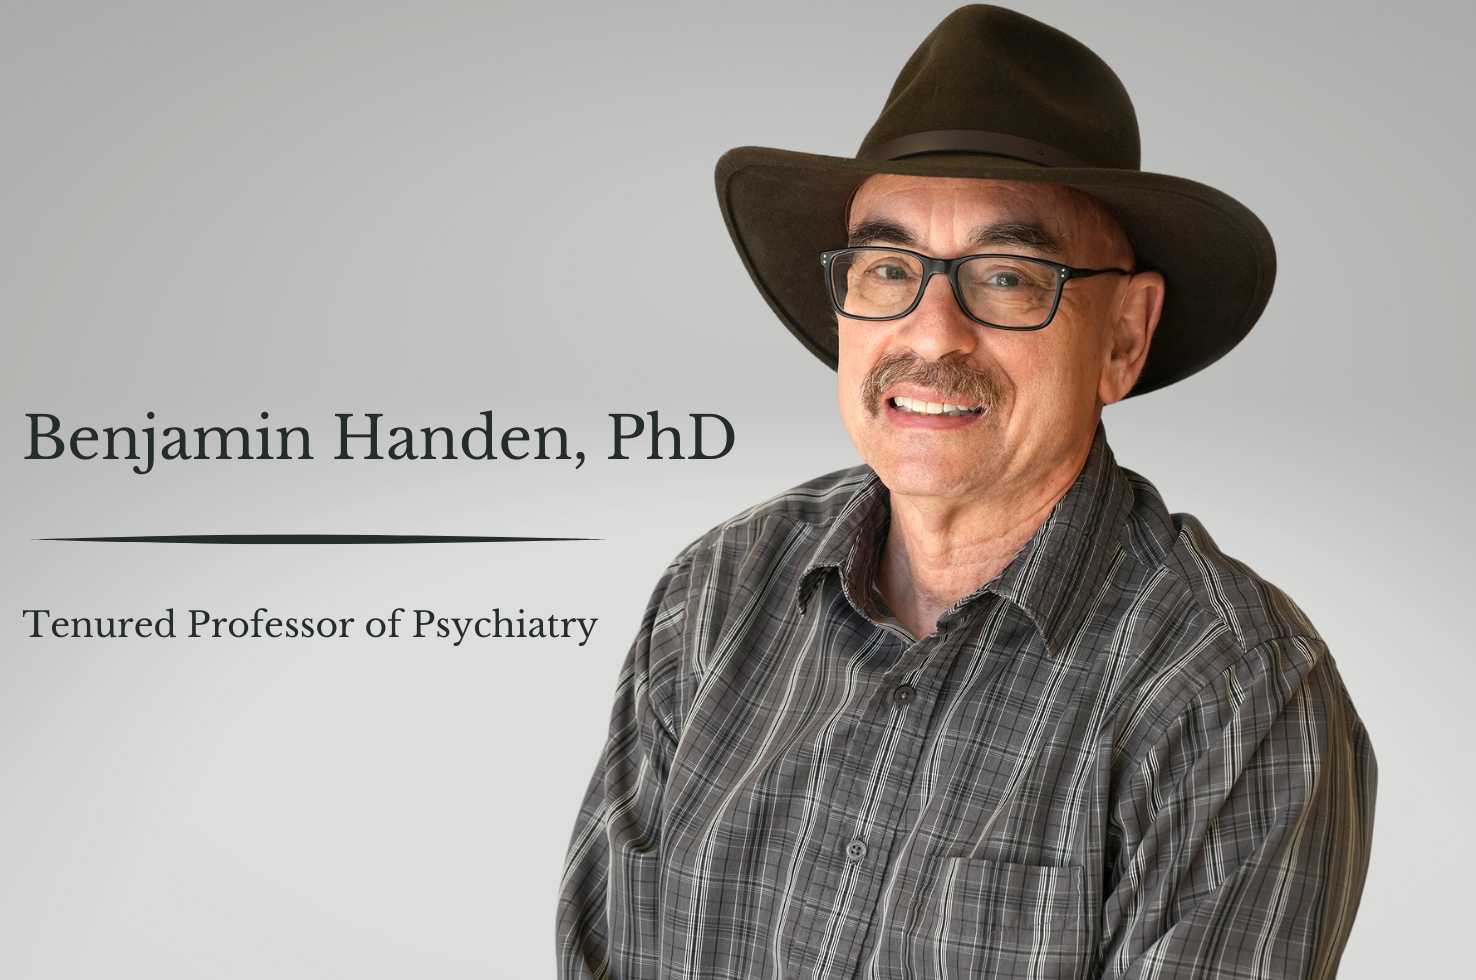 Benjamin Handen, PhD